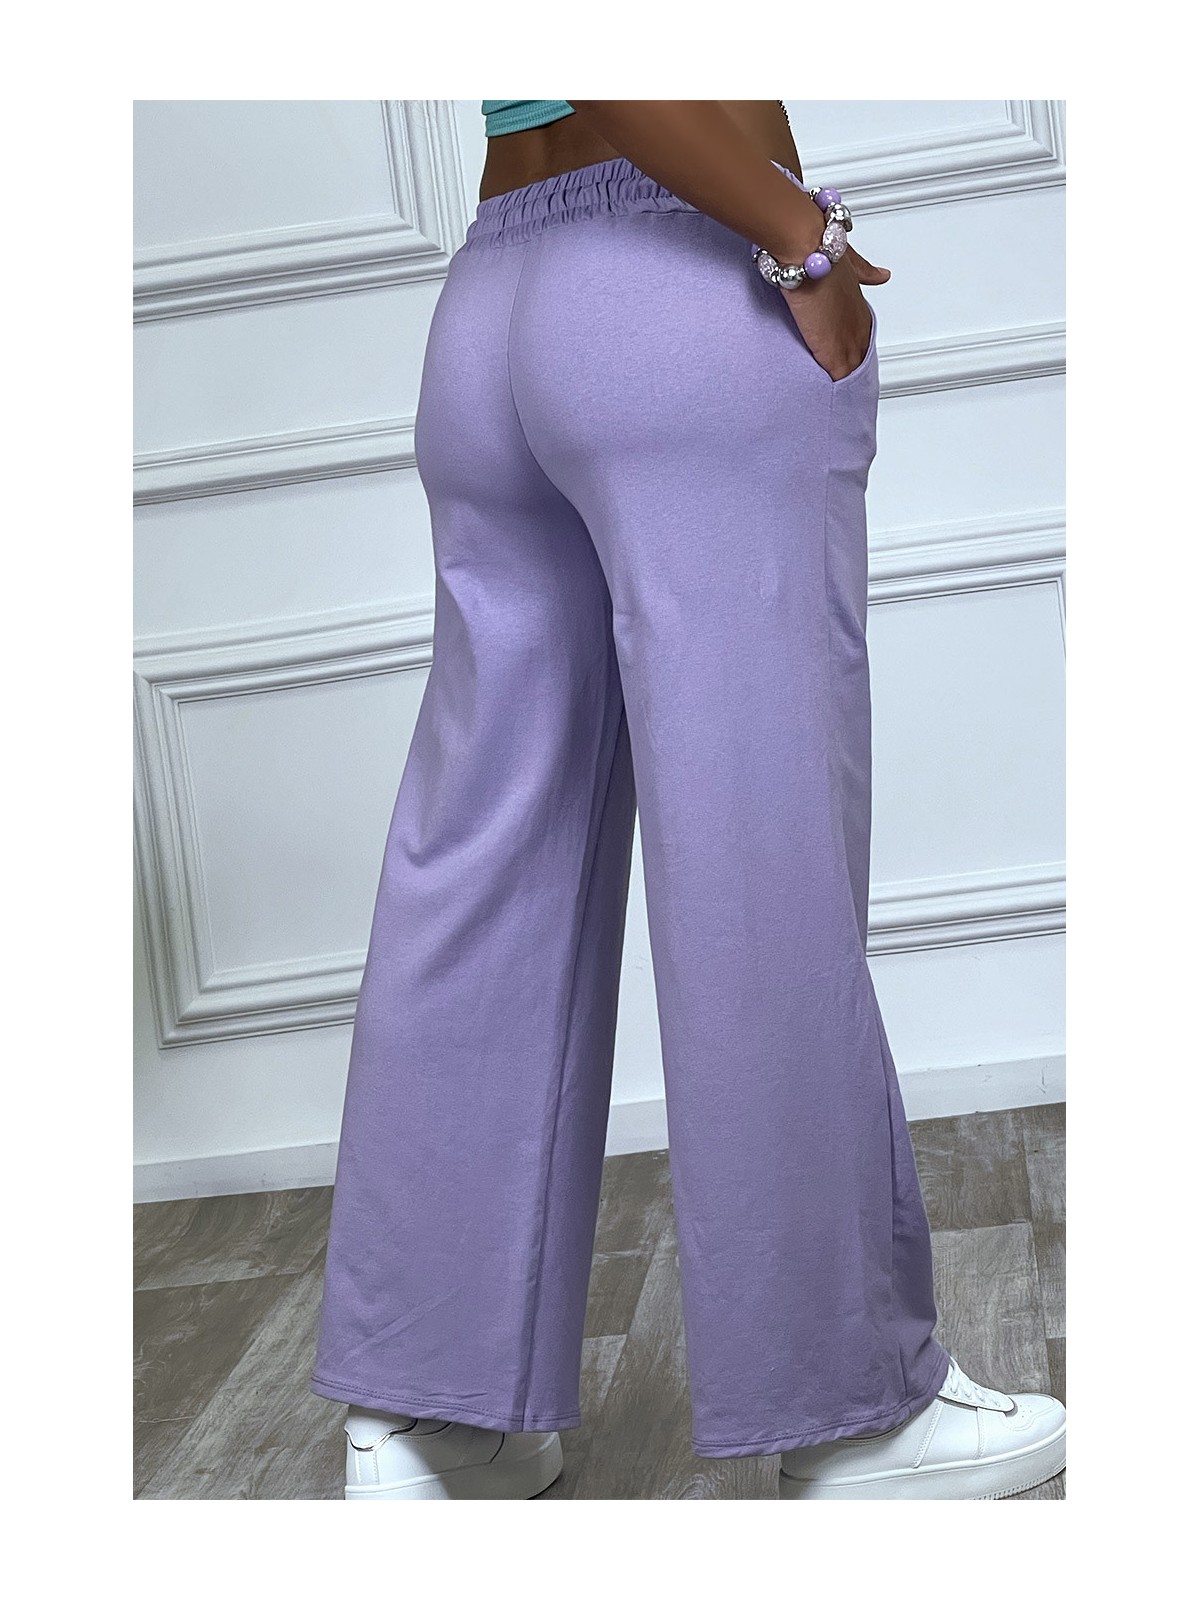 Pantalon jogging violet à élastique - 1